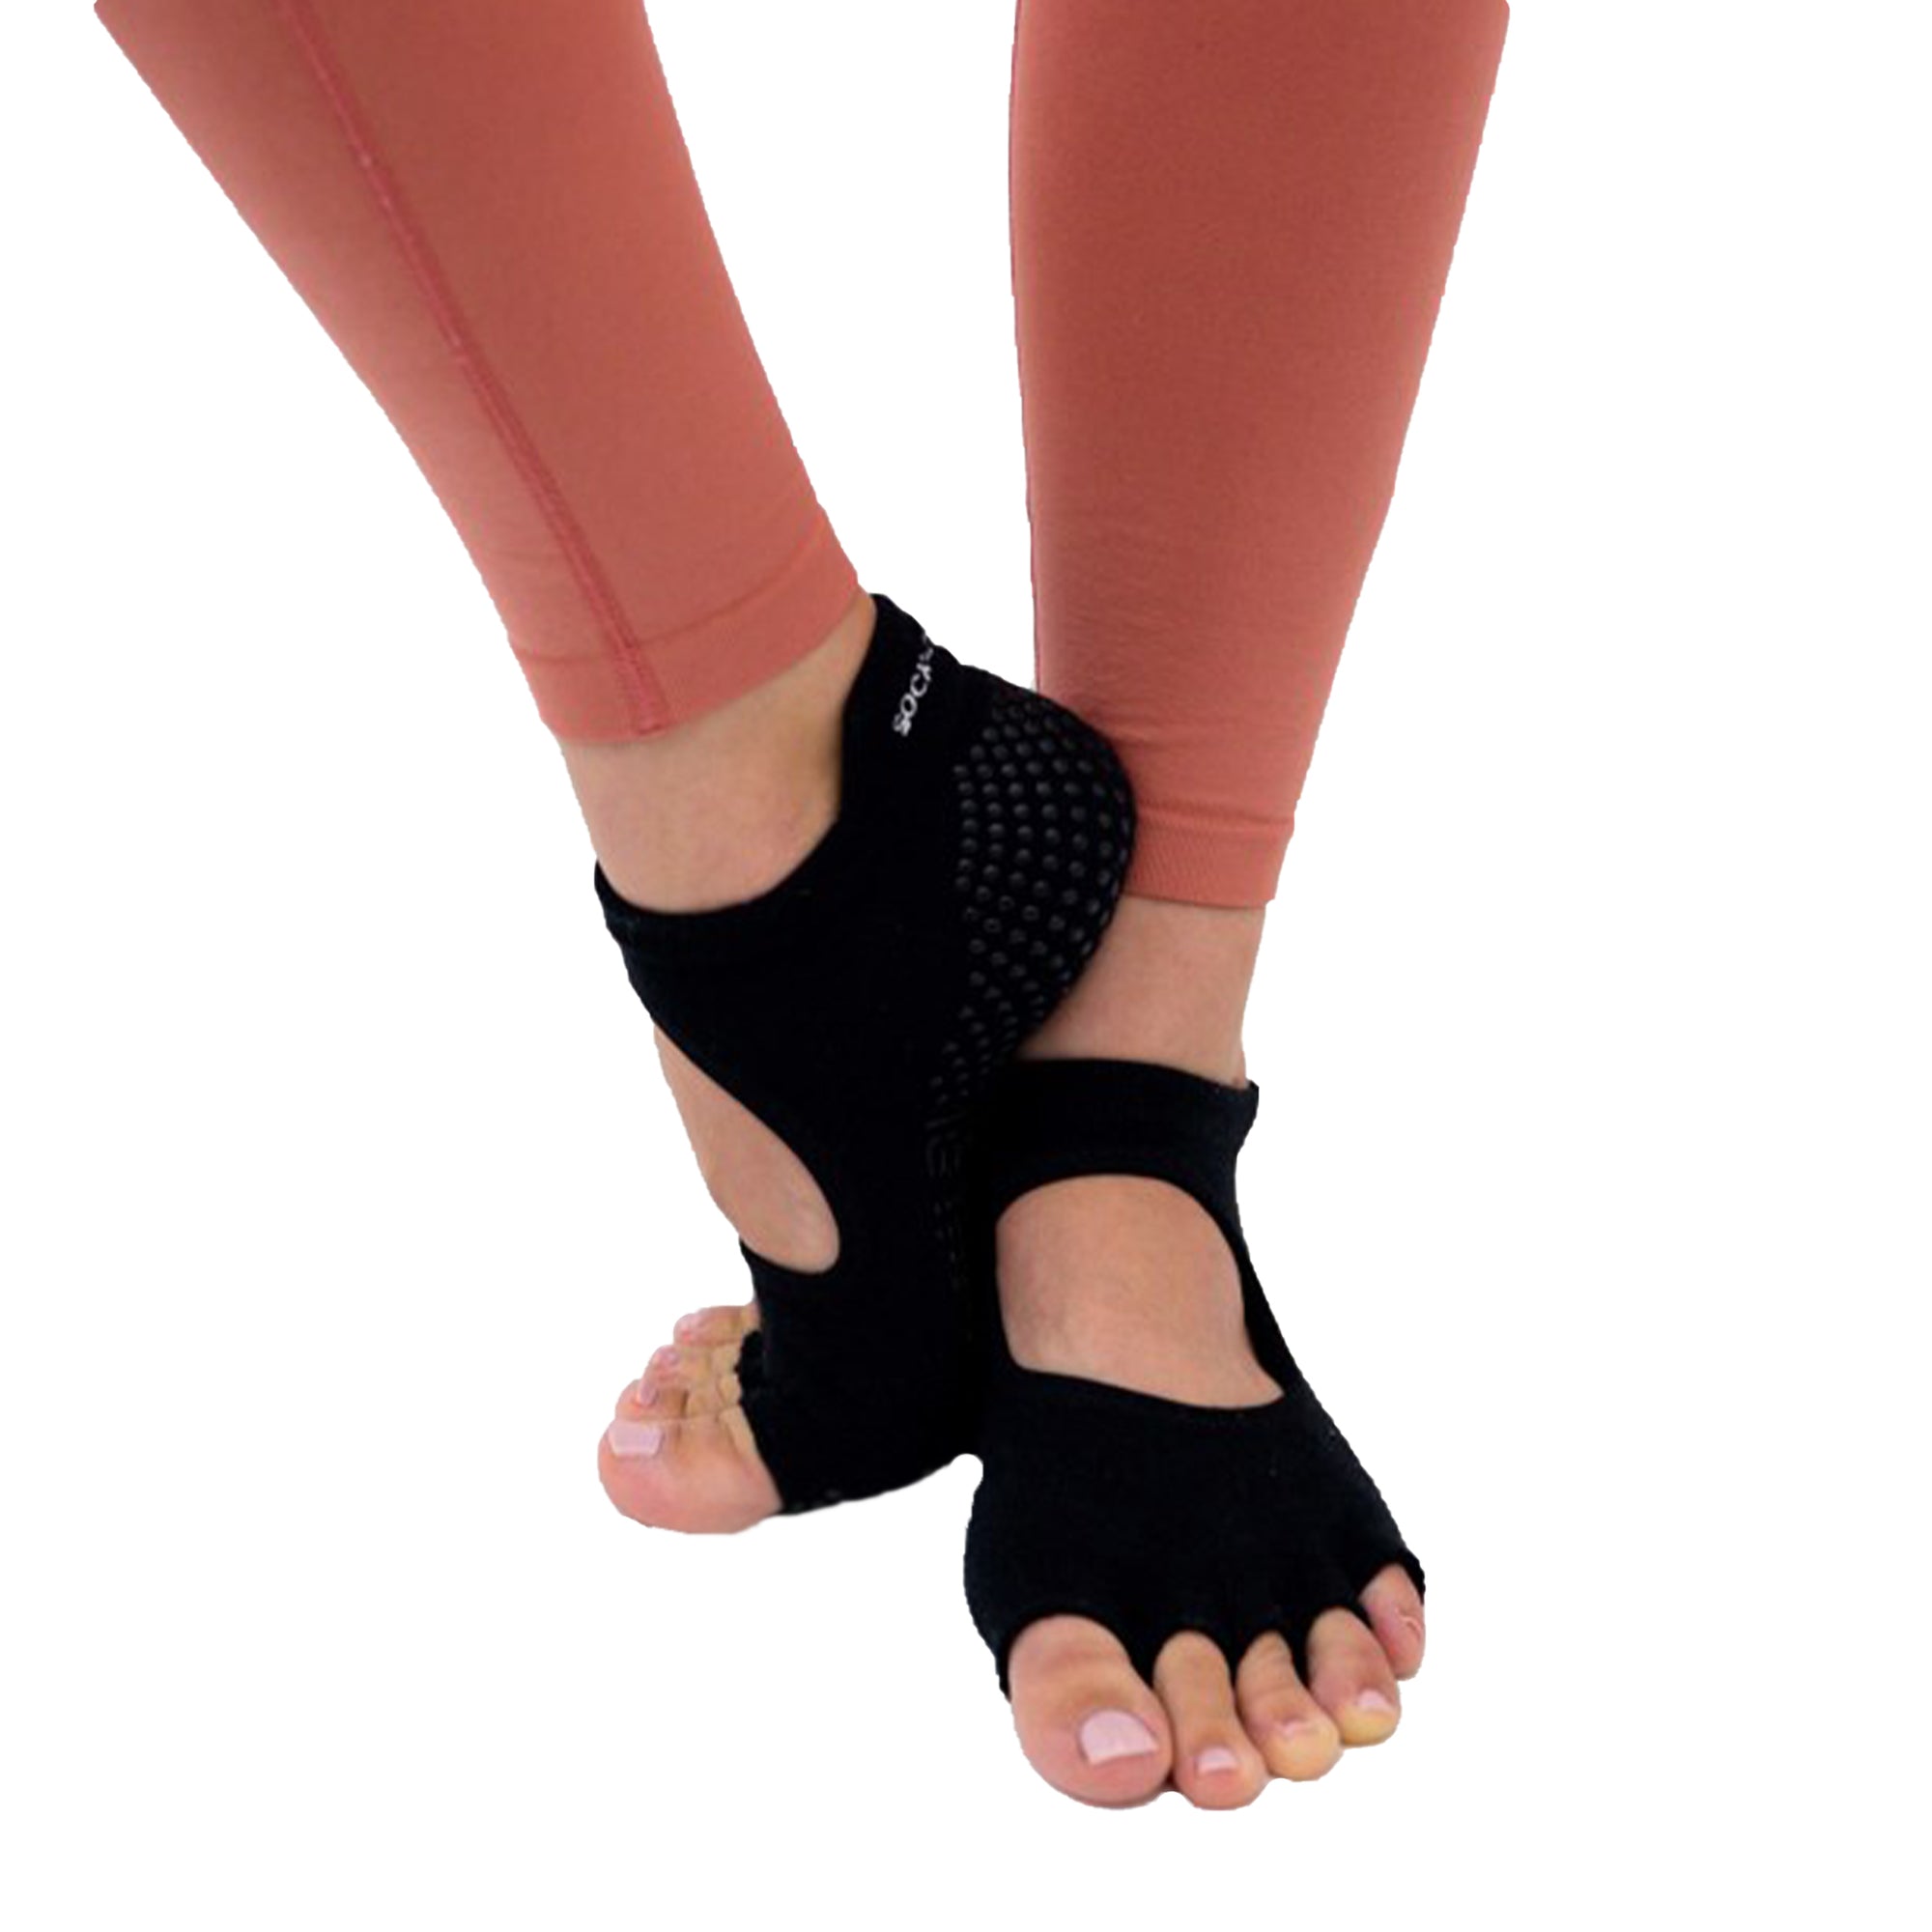 T2P ONE PAIR Non-Slip Yoga Socks for Women Grip Socks Pilates